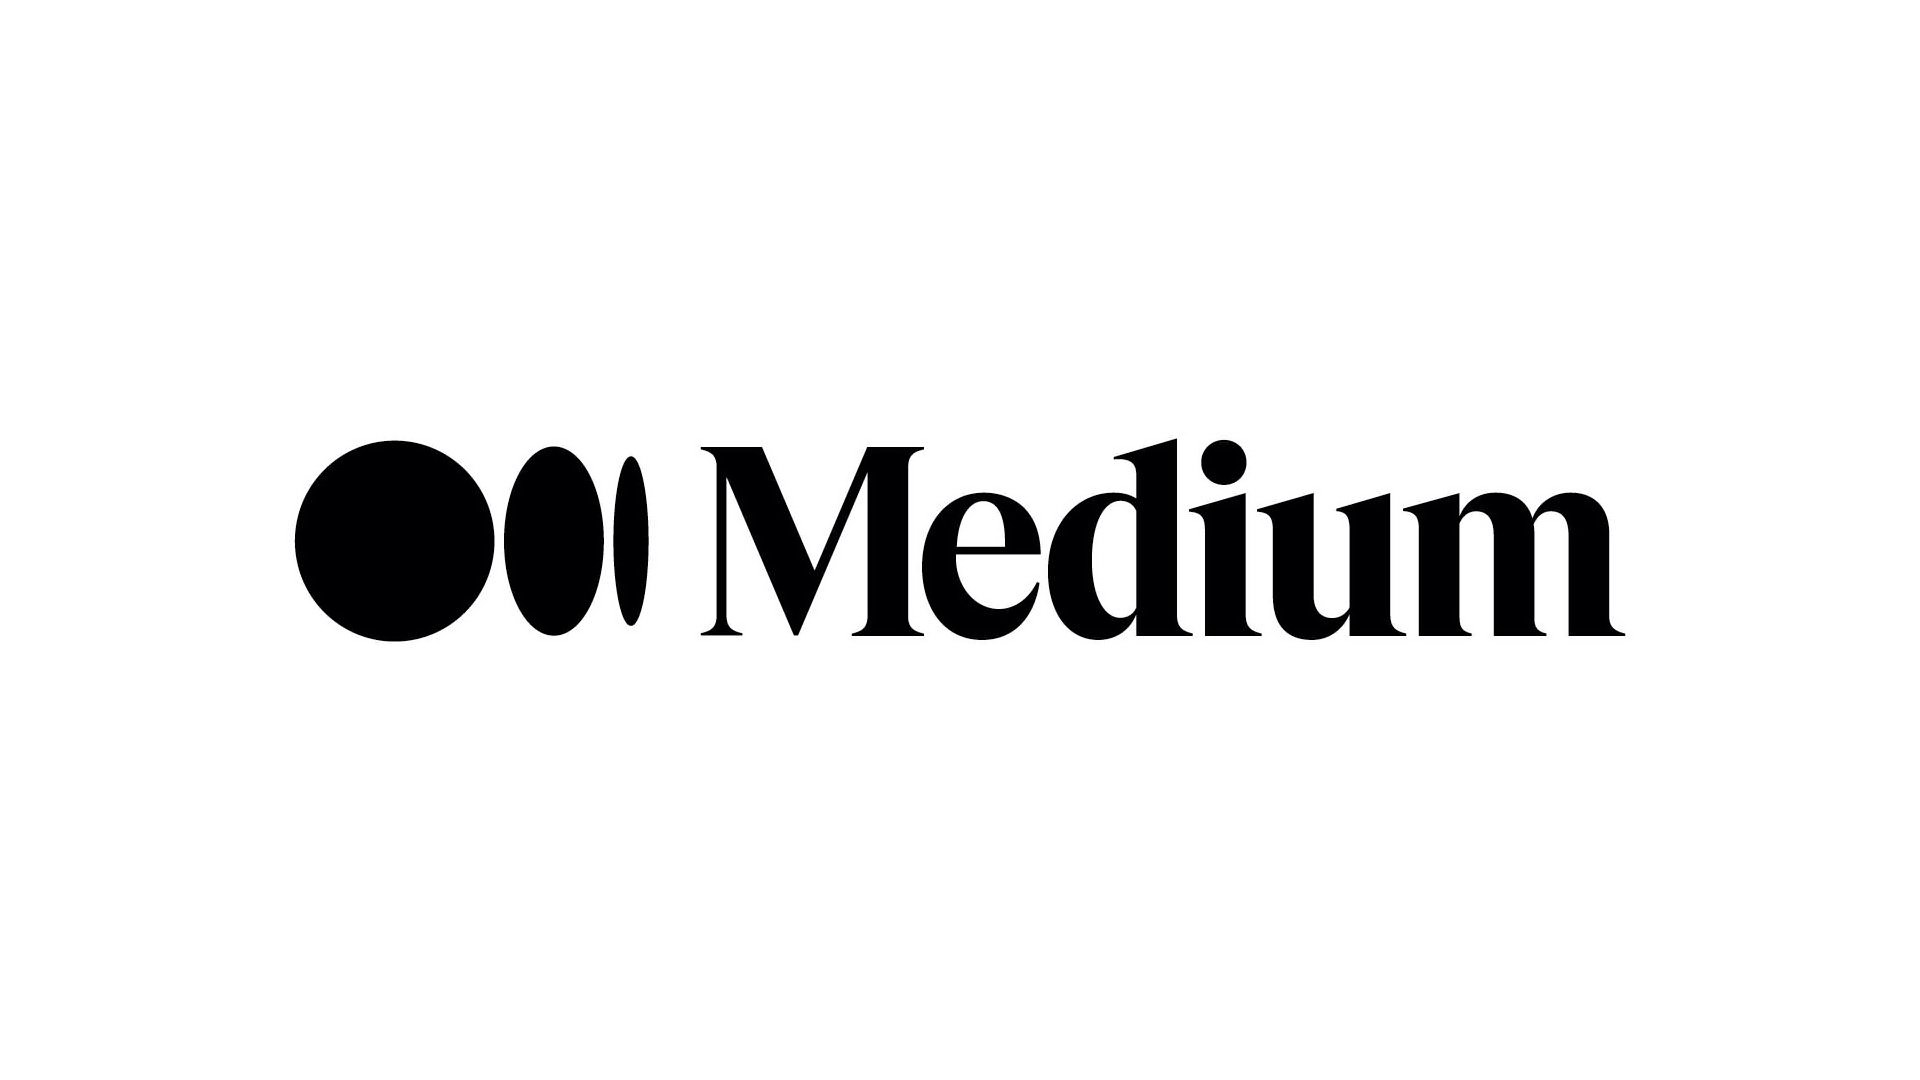 Trademark Logo MEDIUM